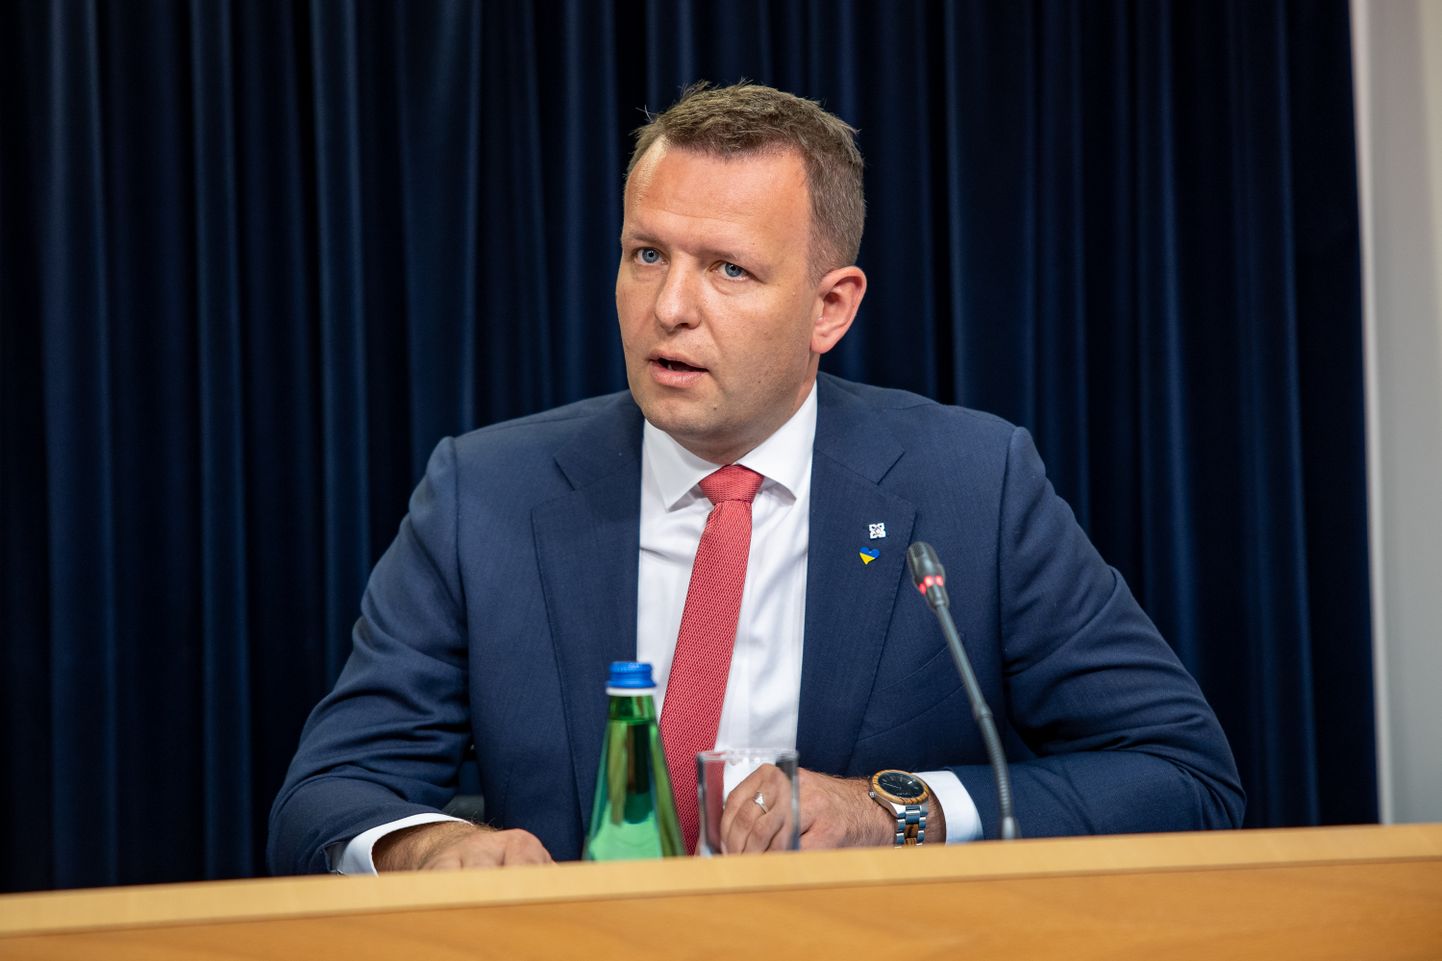 21.07.2022. Tallinn. Valitsuse pressikonverents. Siseminister Lauri Läänemets. Foto Eero Vabamägi, Postimees